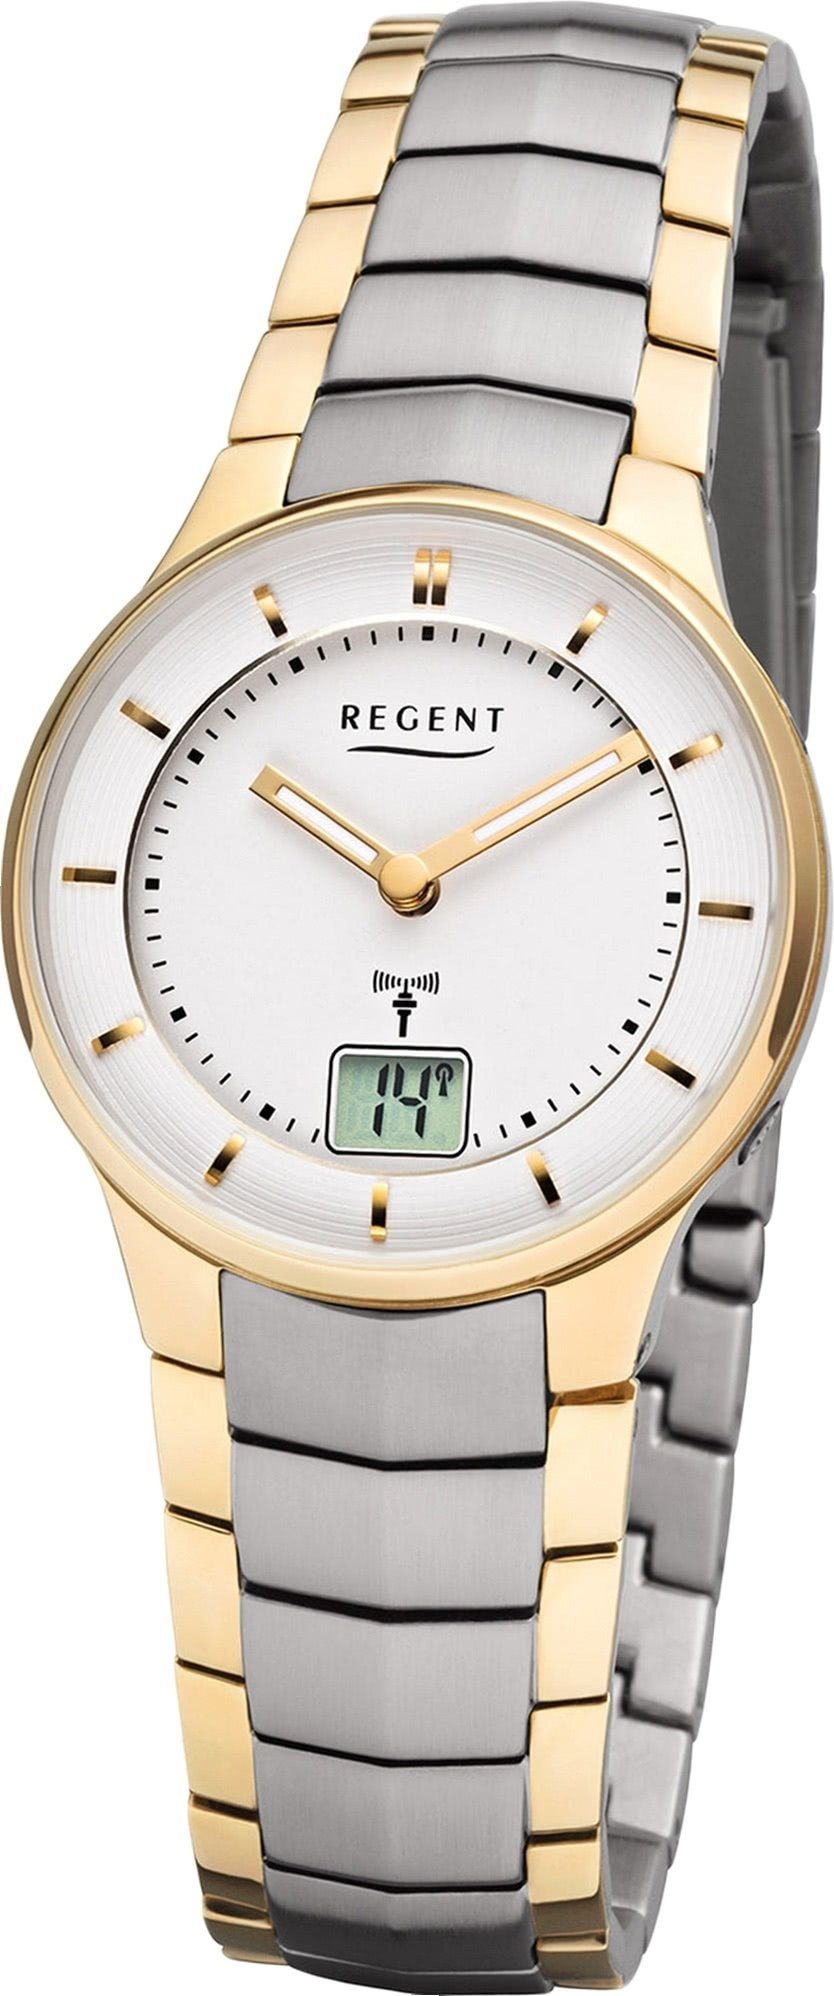 Regent Funkuhr Regent Metall Damen Uhr FR-261, Damenuhr Metallarmband gold, silber, rundes Gehäuse, klein (ca. 30mm)